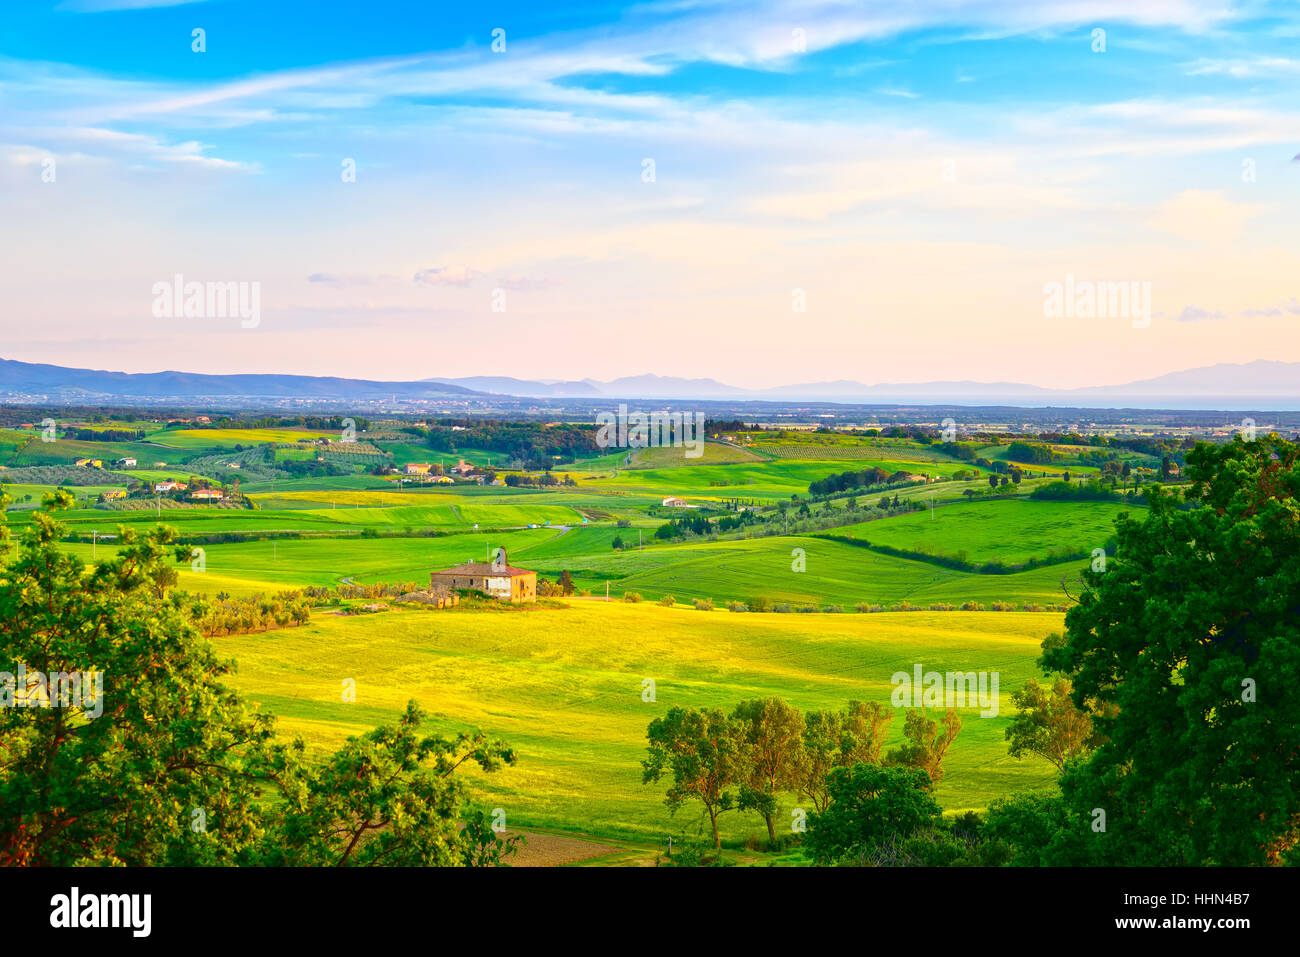 Maremma, Sonnenuntergang Landschaft im ländlichen Raum. Landschaft Bauernhof und grüne Felder. Insel Elba am Horizont. Toskana, Italien, Europa. Stockfoto